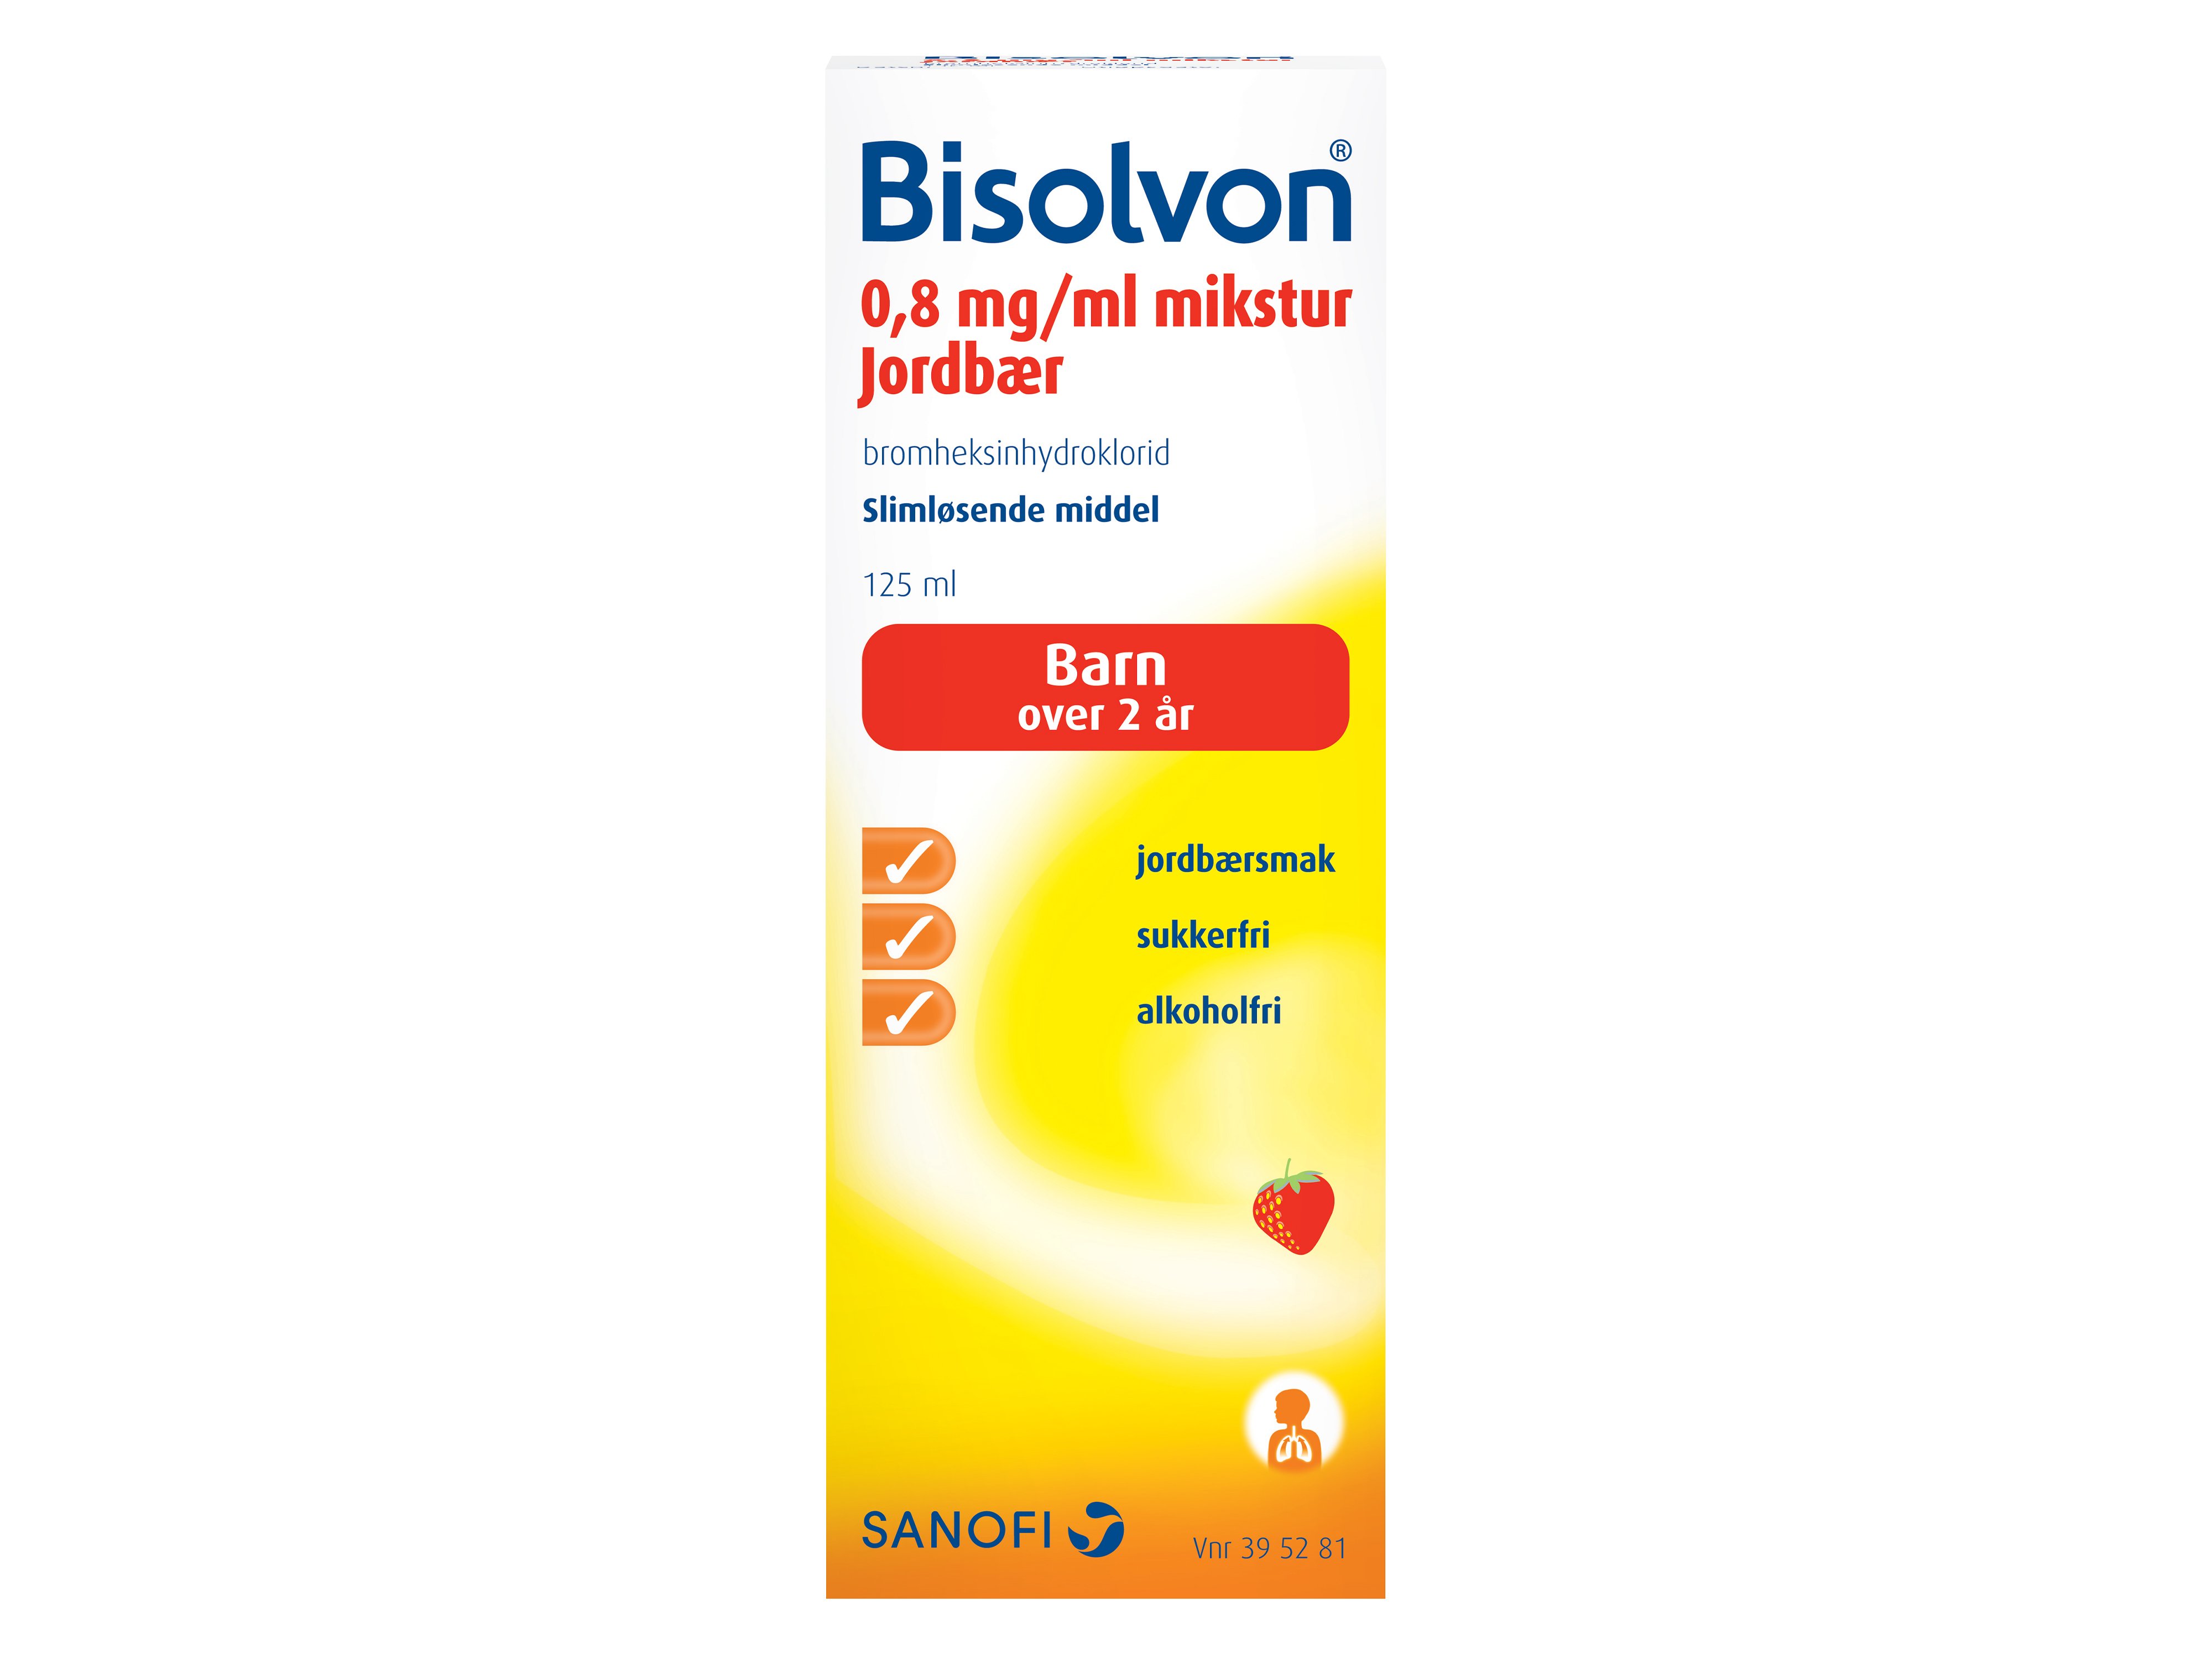 Bisolvon Mikstur 0,8mg/ml jordbær, 125 ml.